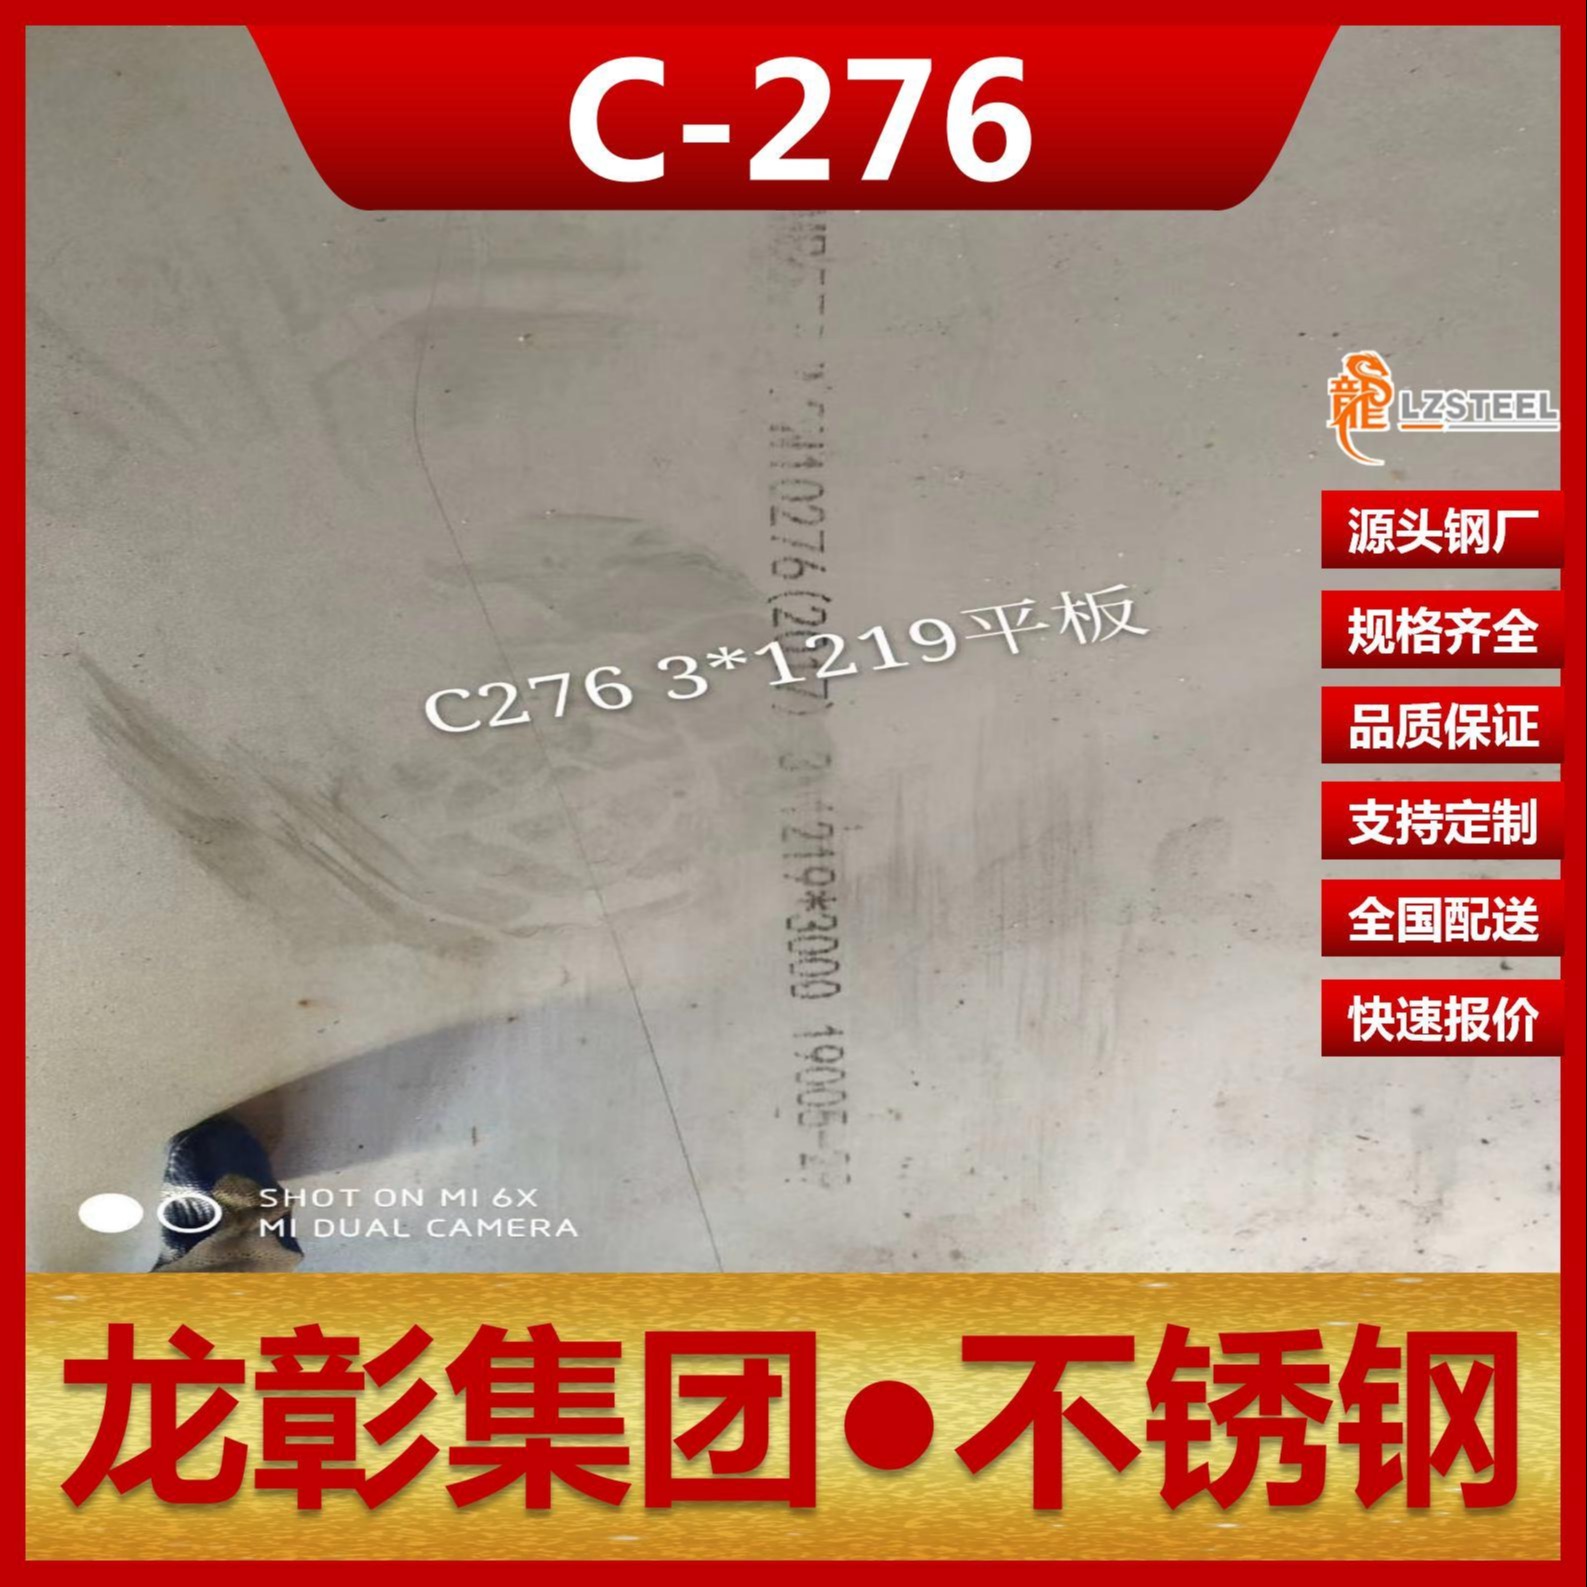 哈氏合金C-276不锈钢现货批零 龙彰集团主营C-276不锈钢板圆钢棒